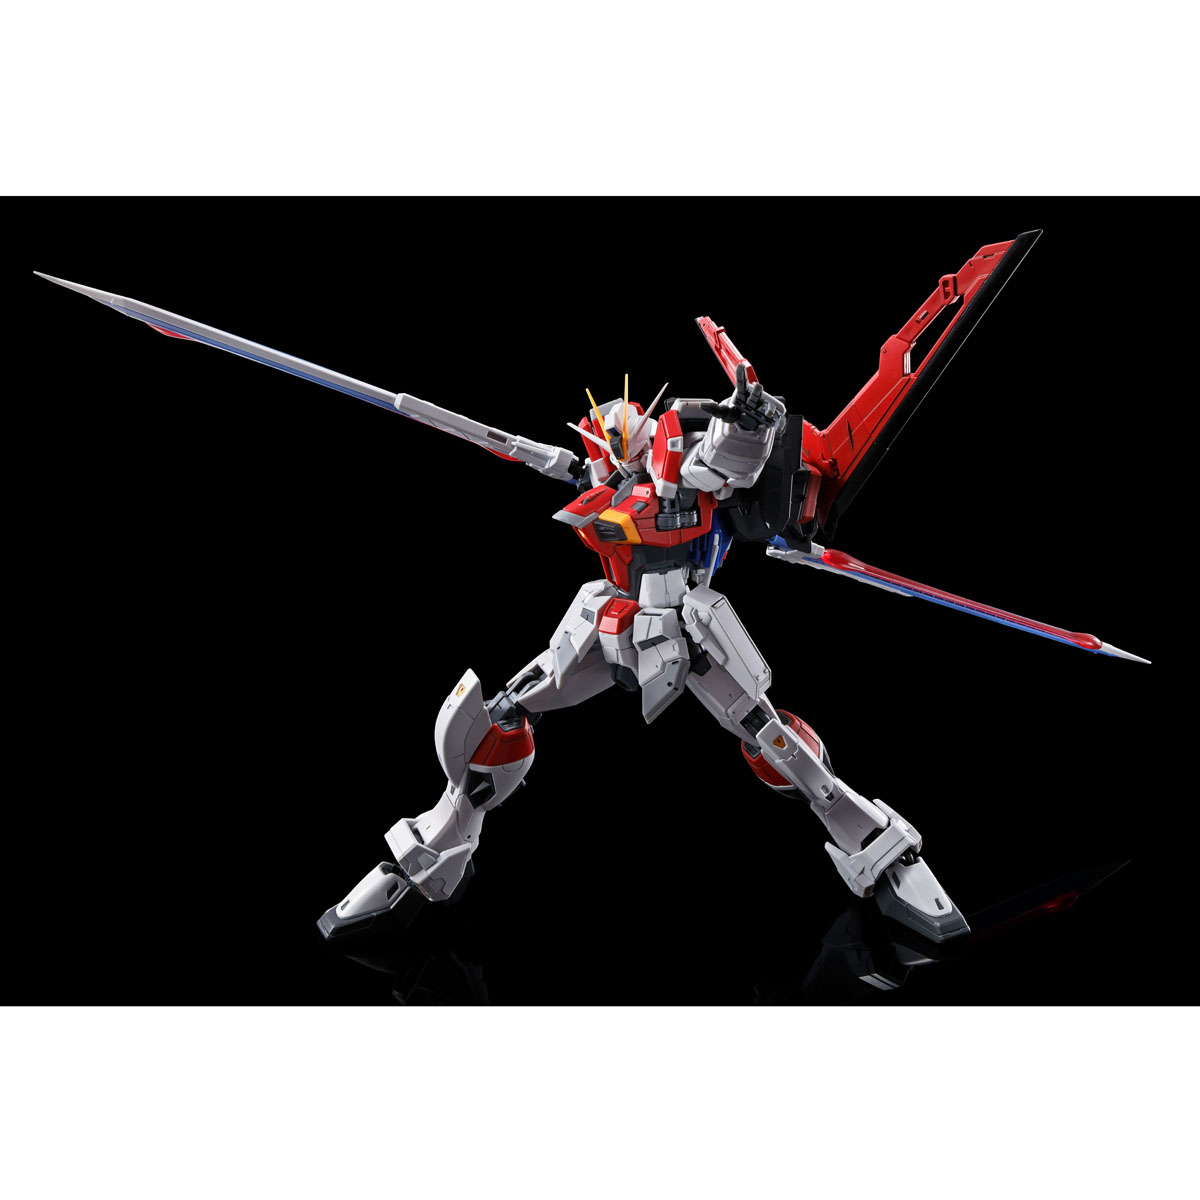 P-BANDAI RG 1/144 Sword Impulse Gundam Plastic Model Kit 